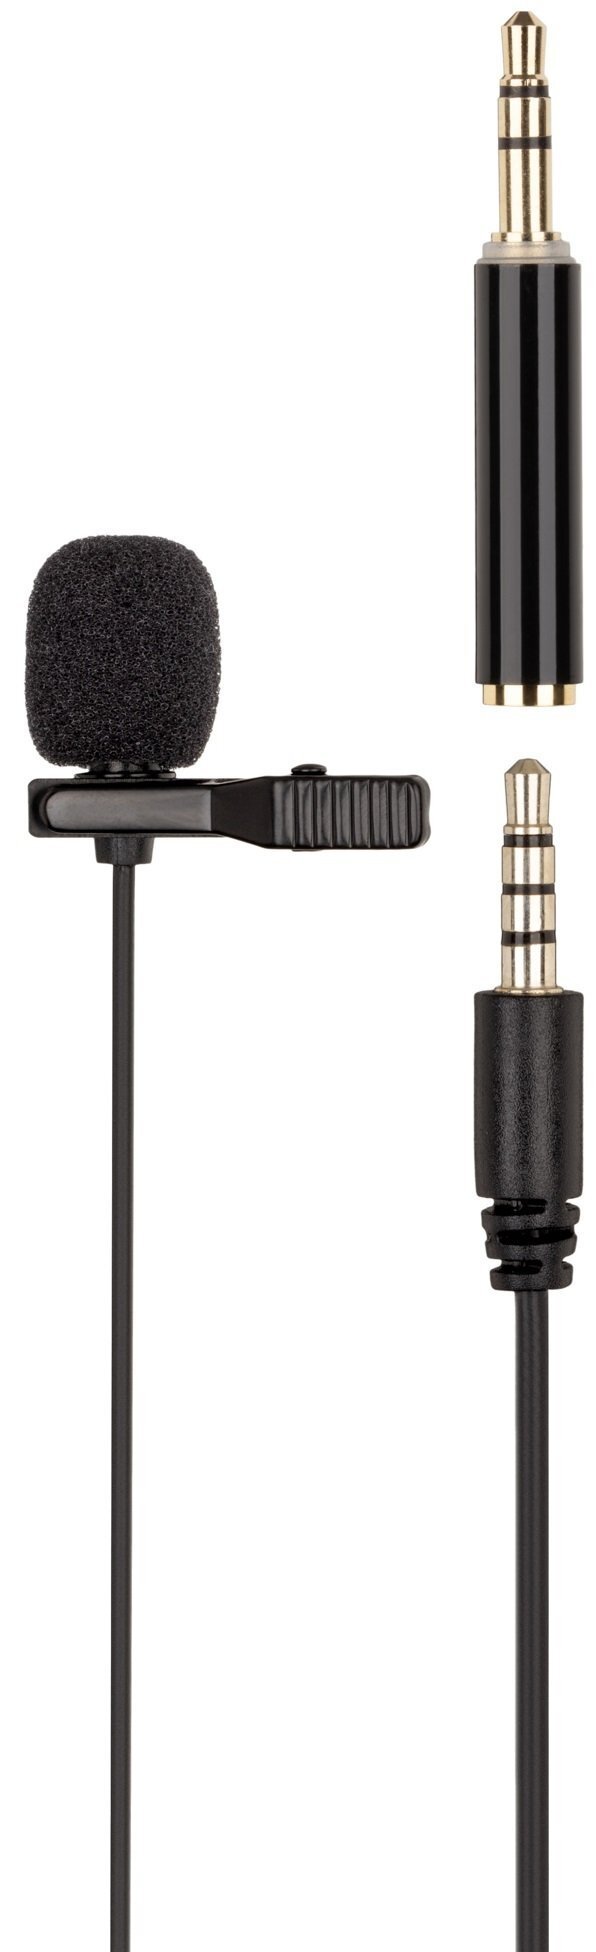 Микрофон 2Е ML020, 3.5mm (2E-ML020) фото 1